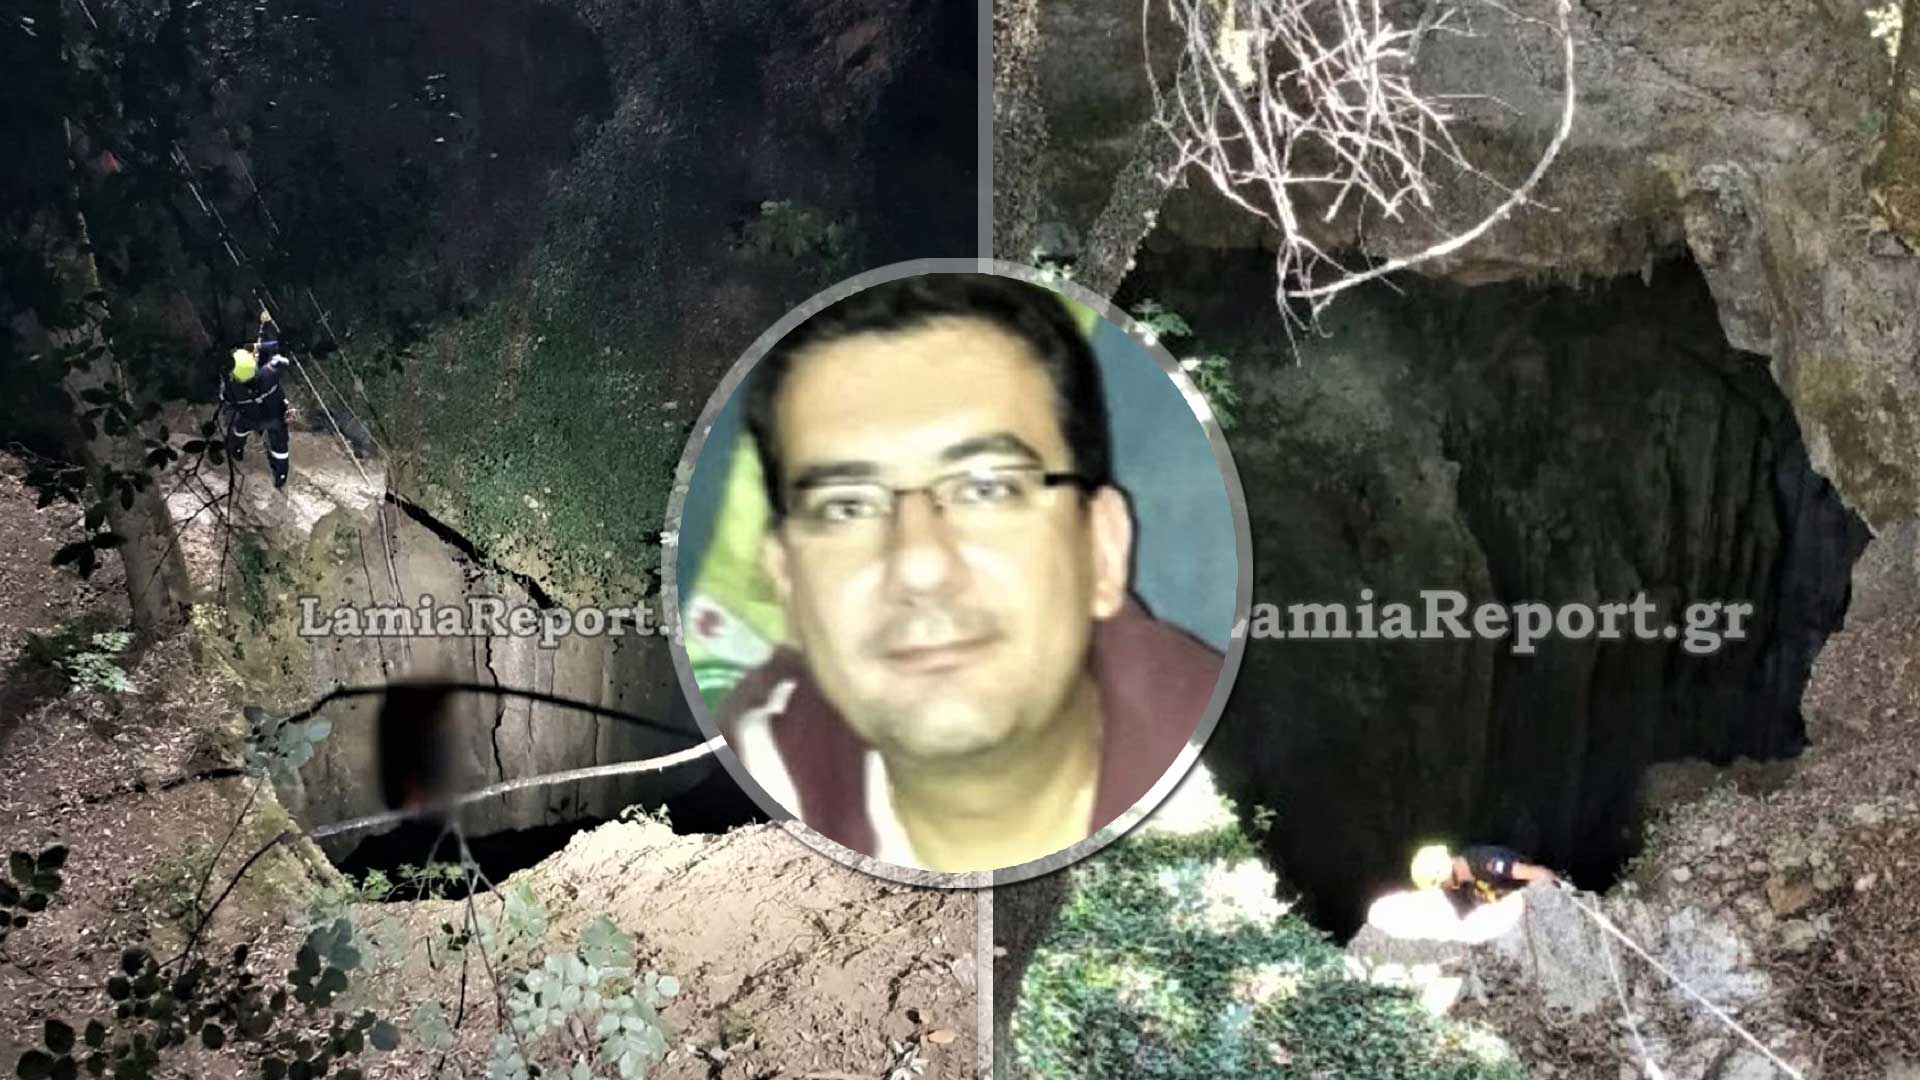 Ευρυτανία: Ο 42χρονος αστυνομικός βρέθηκε νεκρός σε τρύπα βάθους 65 μέτρων